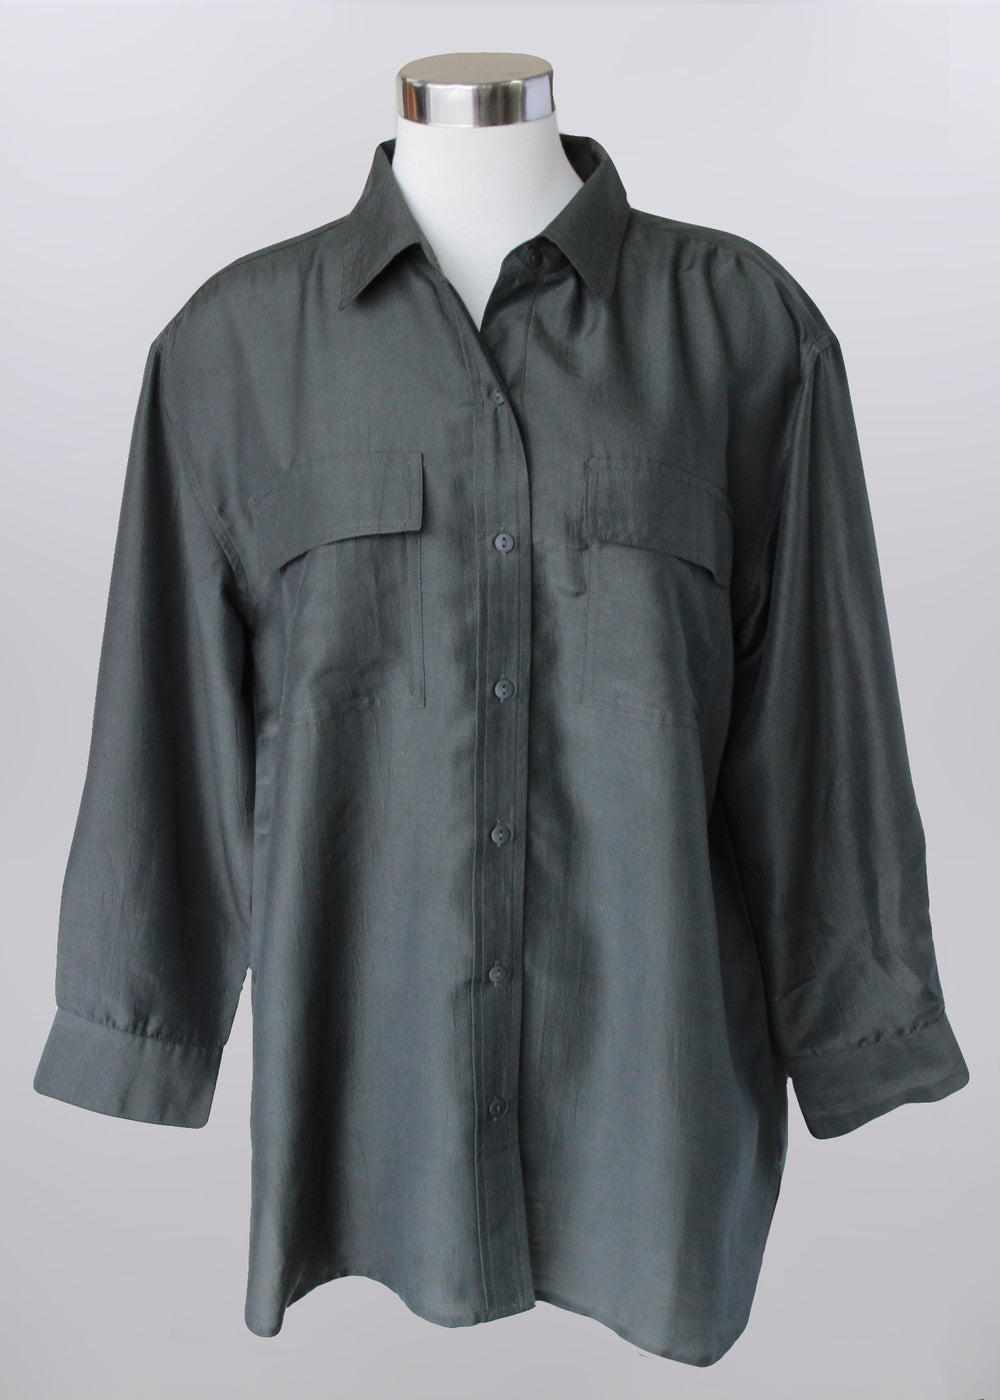 Keren Hart shirt 75023, button front collar